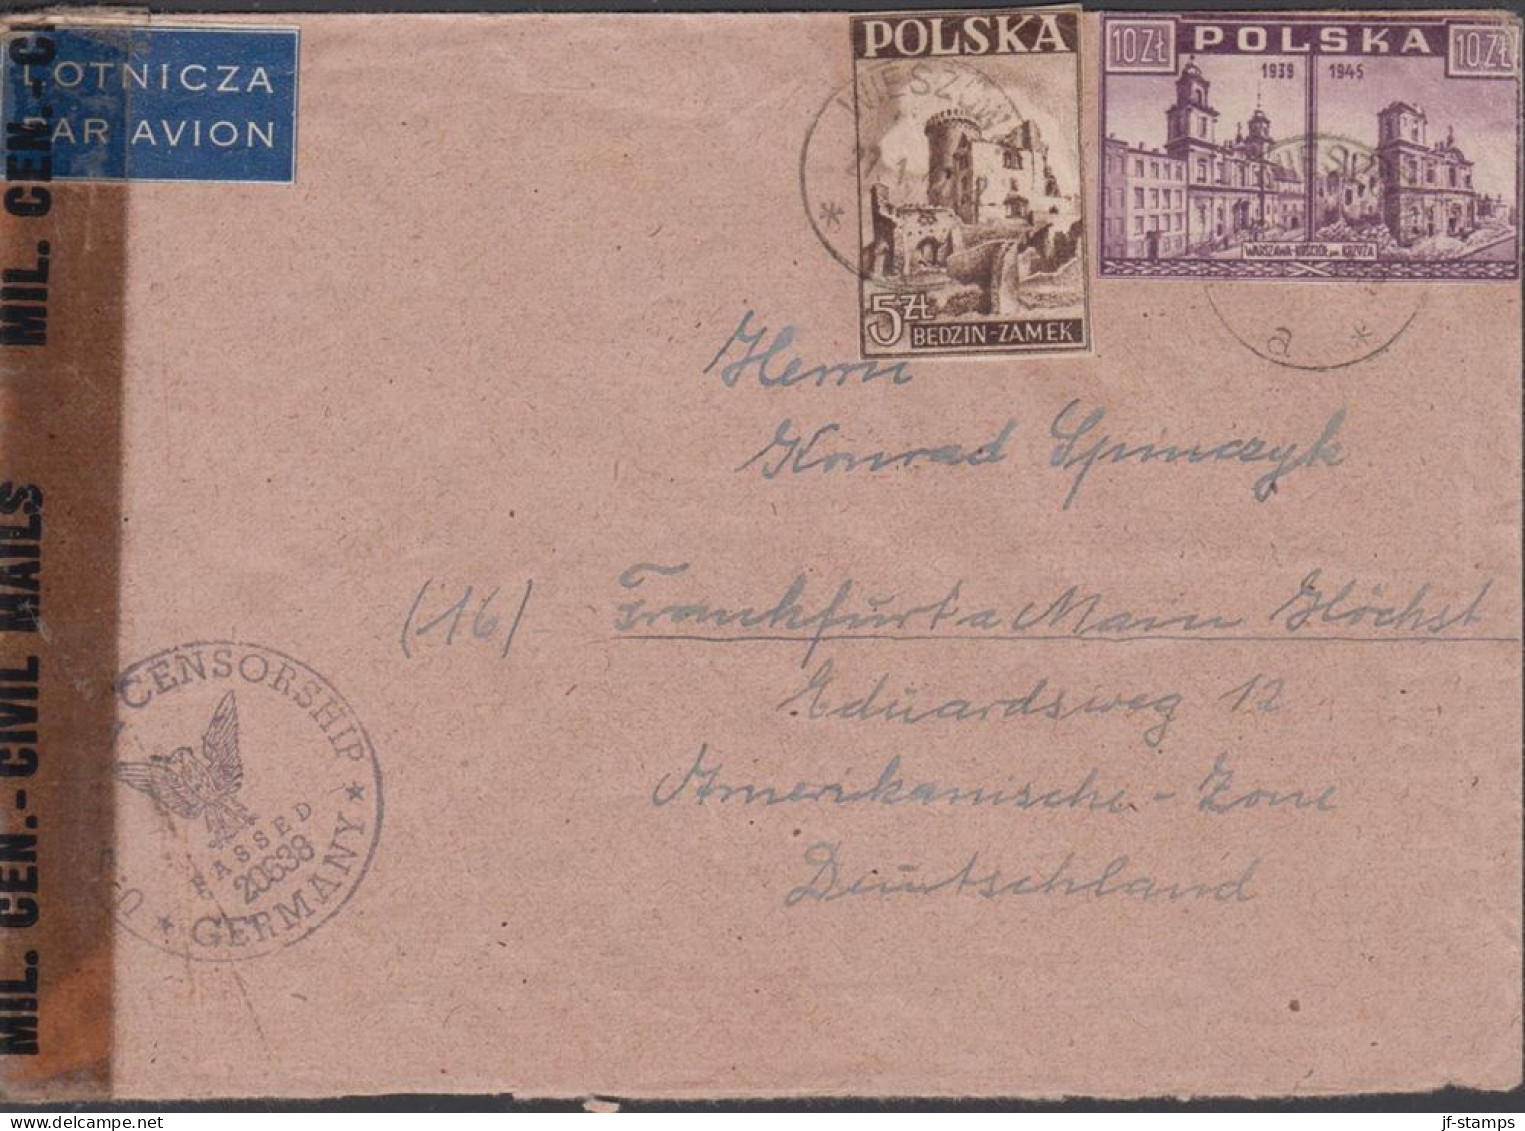 1947. POLSKA. 10 Zl. WARSZAWA + ZL 5 On Censored Cover To Germany Cancelled WIESZOW 27. 1. 4... (Michel 419+) - JF438546 - Londoner Regierung (Exil)